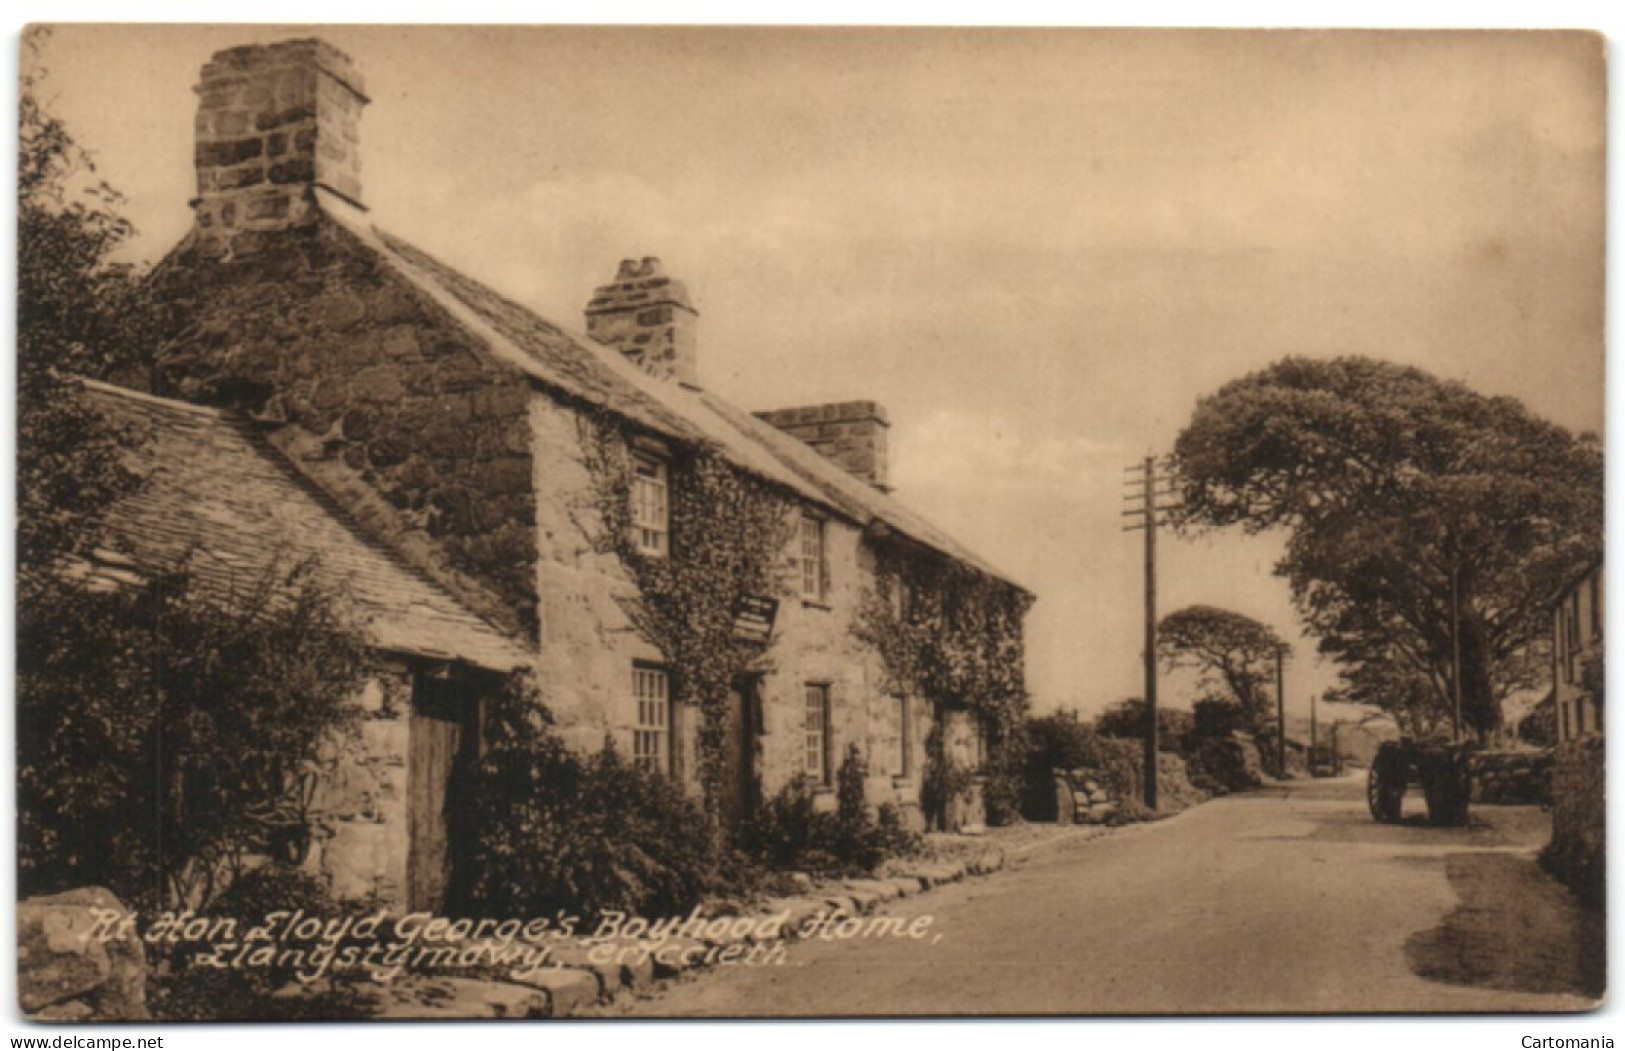 Rt. Hon Lloyd George's Boyhoad Home - Llaynystymdwy - Criccieth - Gwynedd